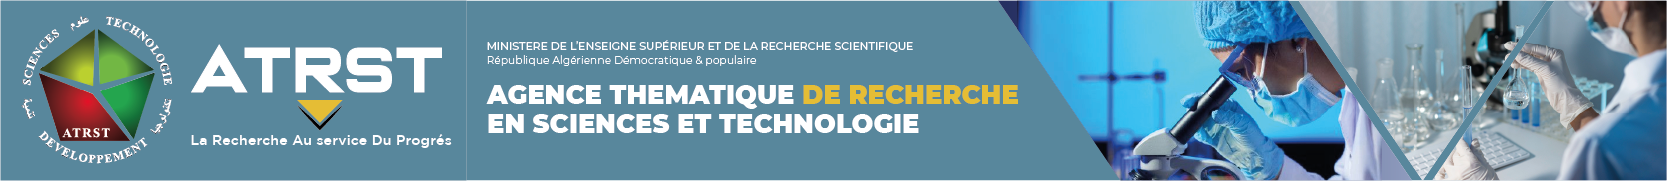 Agence Thématique de Recherche en Sciences et Technologie